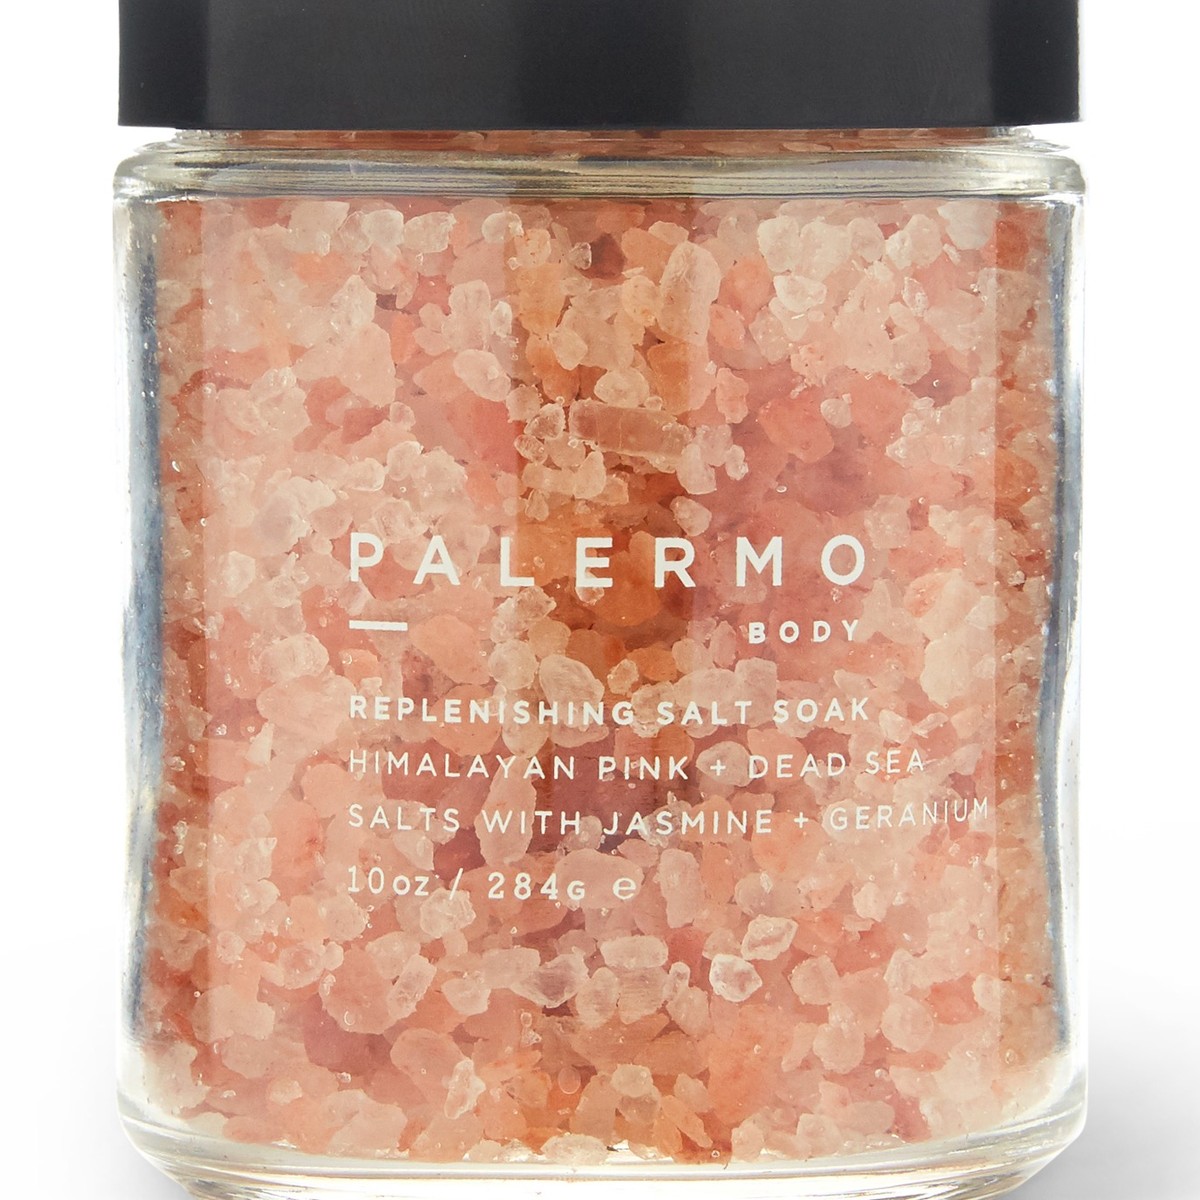  BEYOND HIMALAYAN Pink Himalayan Sea Salt Substitute - 10.5 oz.  - Tasty Low Sodium Salt & Potassium Salt Substitute for High Blood Pressure  - Himalayan Pink Salt Substitute With Real